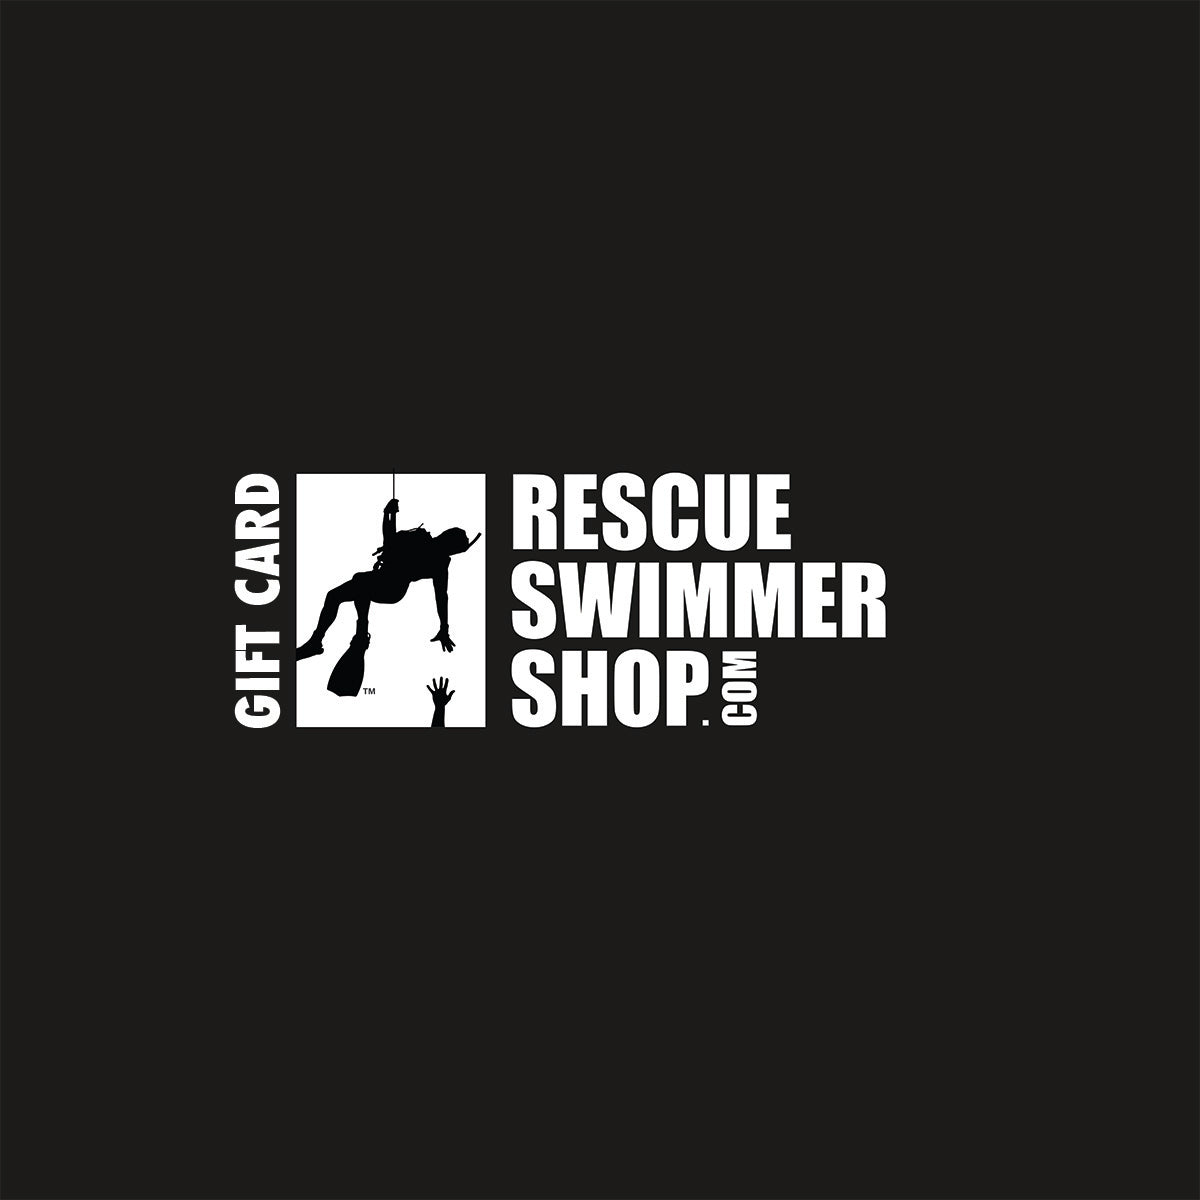 Rescue Swimmer Shop